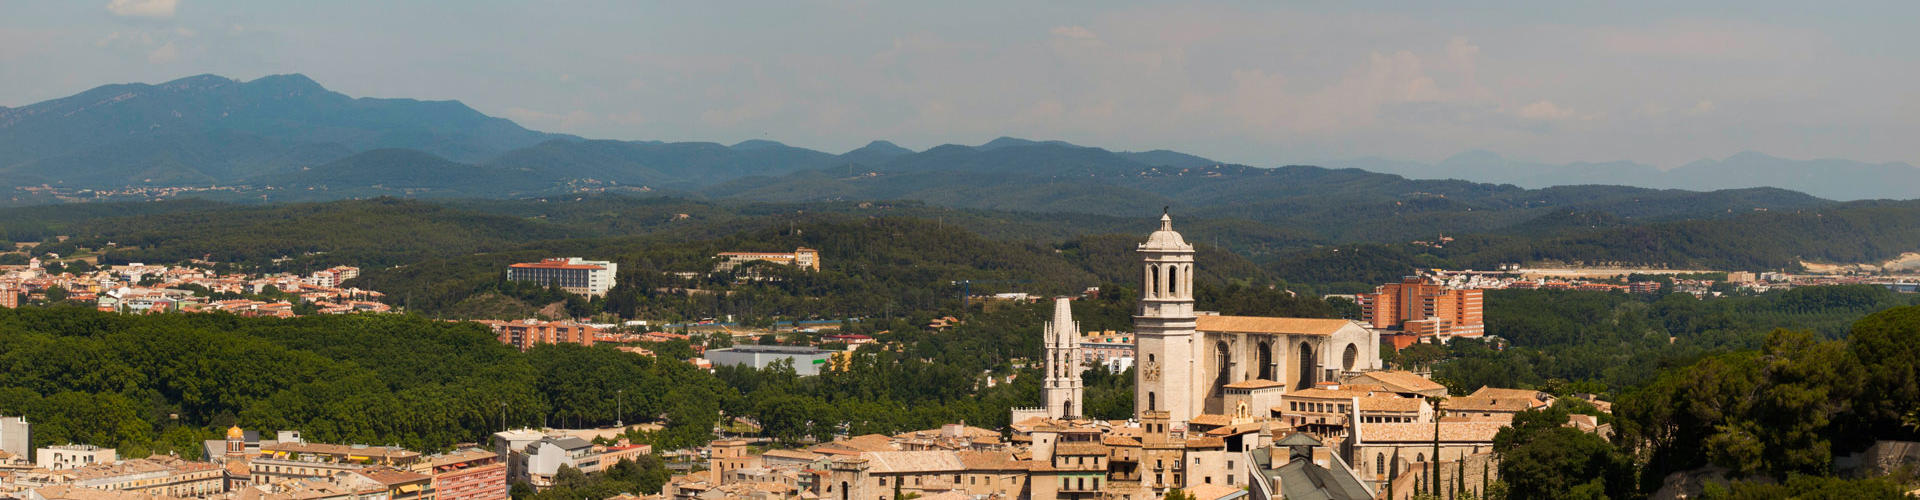 Girona des el mirador de la Torre d'Alfons XII